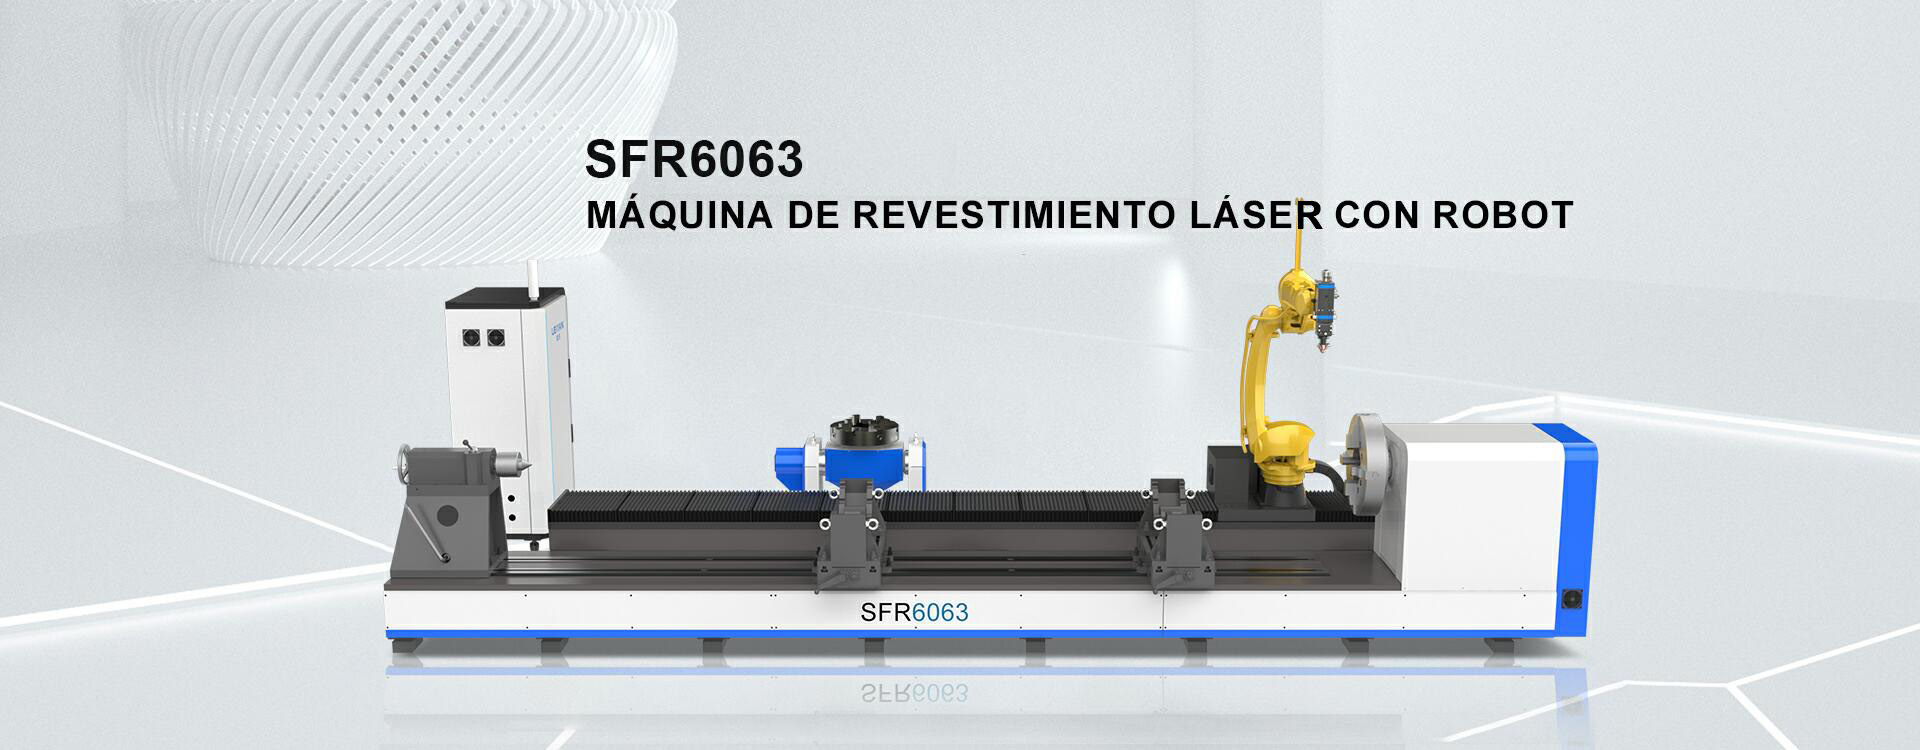 Máquina de revestimiento láser con robot SFR6063